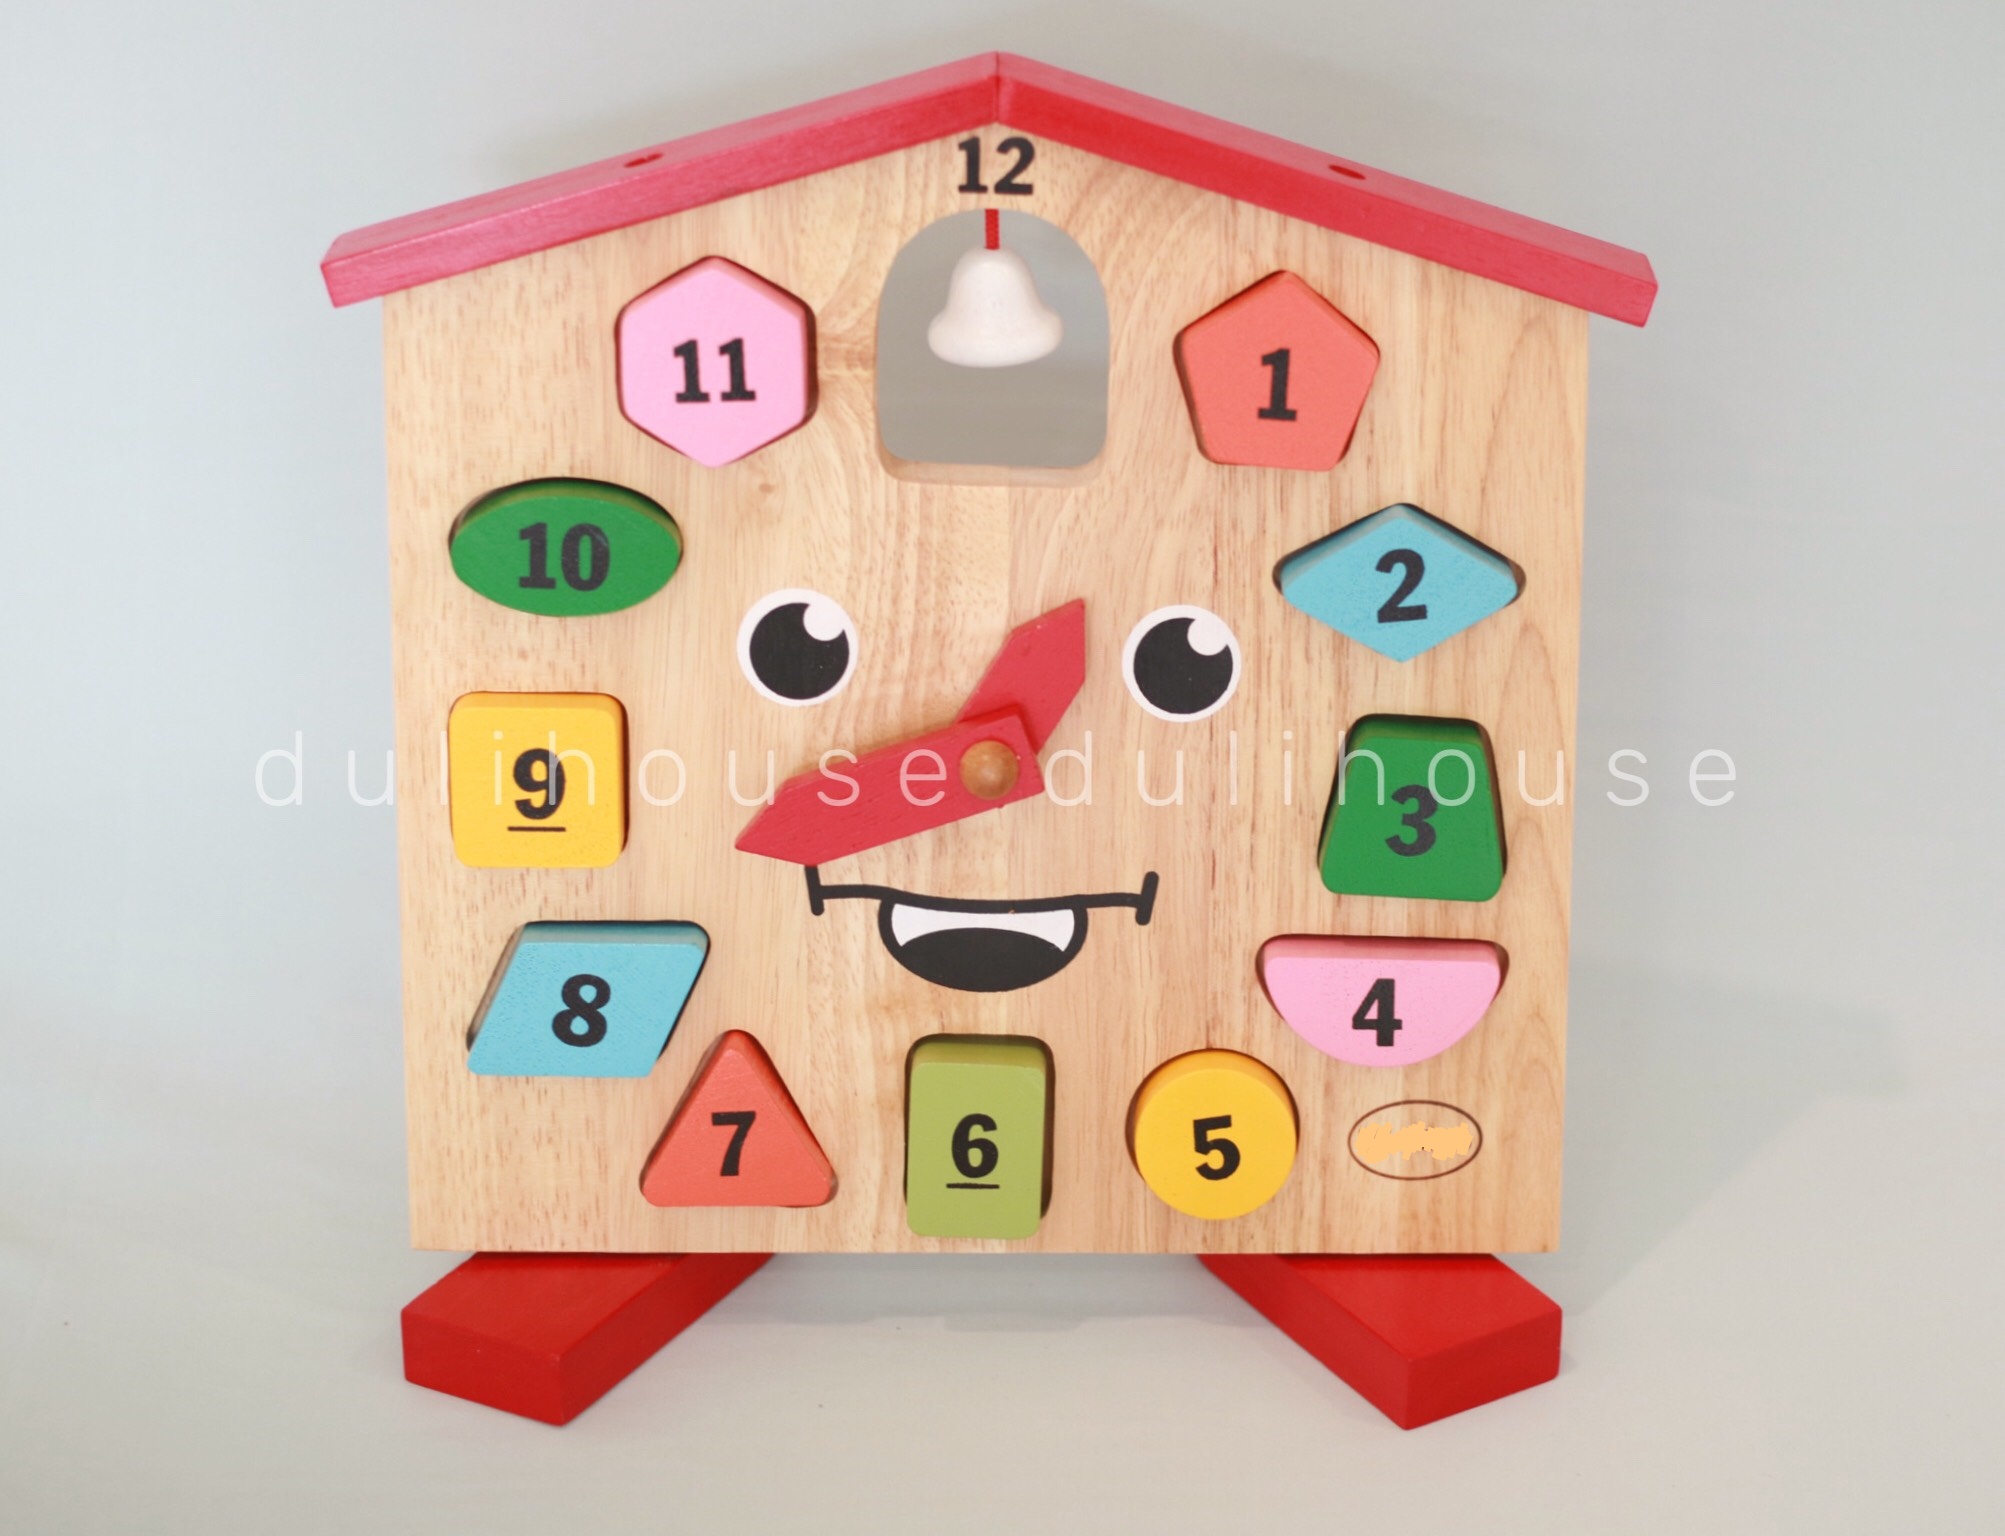 Đồng hồ mặt cười ngôi nhà thân thiện - Vừa giúp bé học đếm, vừa ghi nhớ hình khối và màu sắc cơ bản - Sản phẩm hỗ trợ quá trình tiếp cận cuộc sống cho Bé từ sớm - Gỗ tự nhiên an toàn